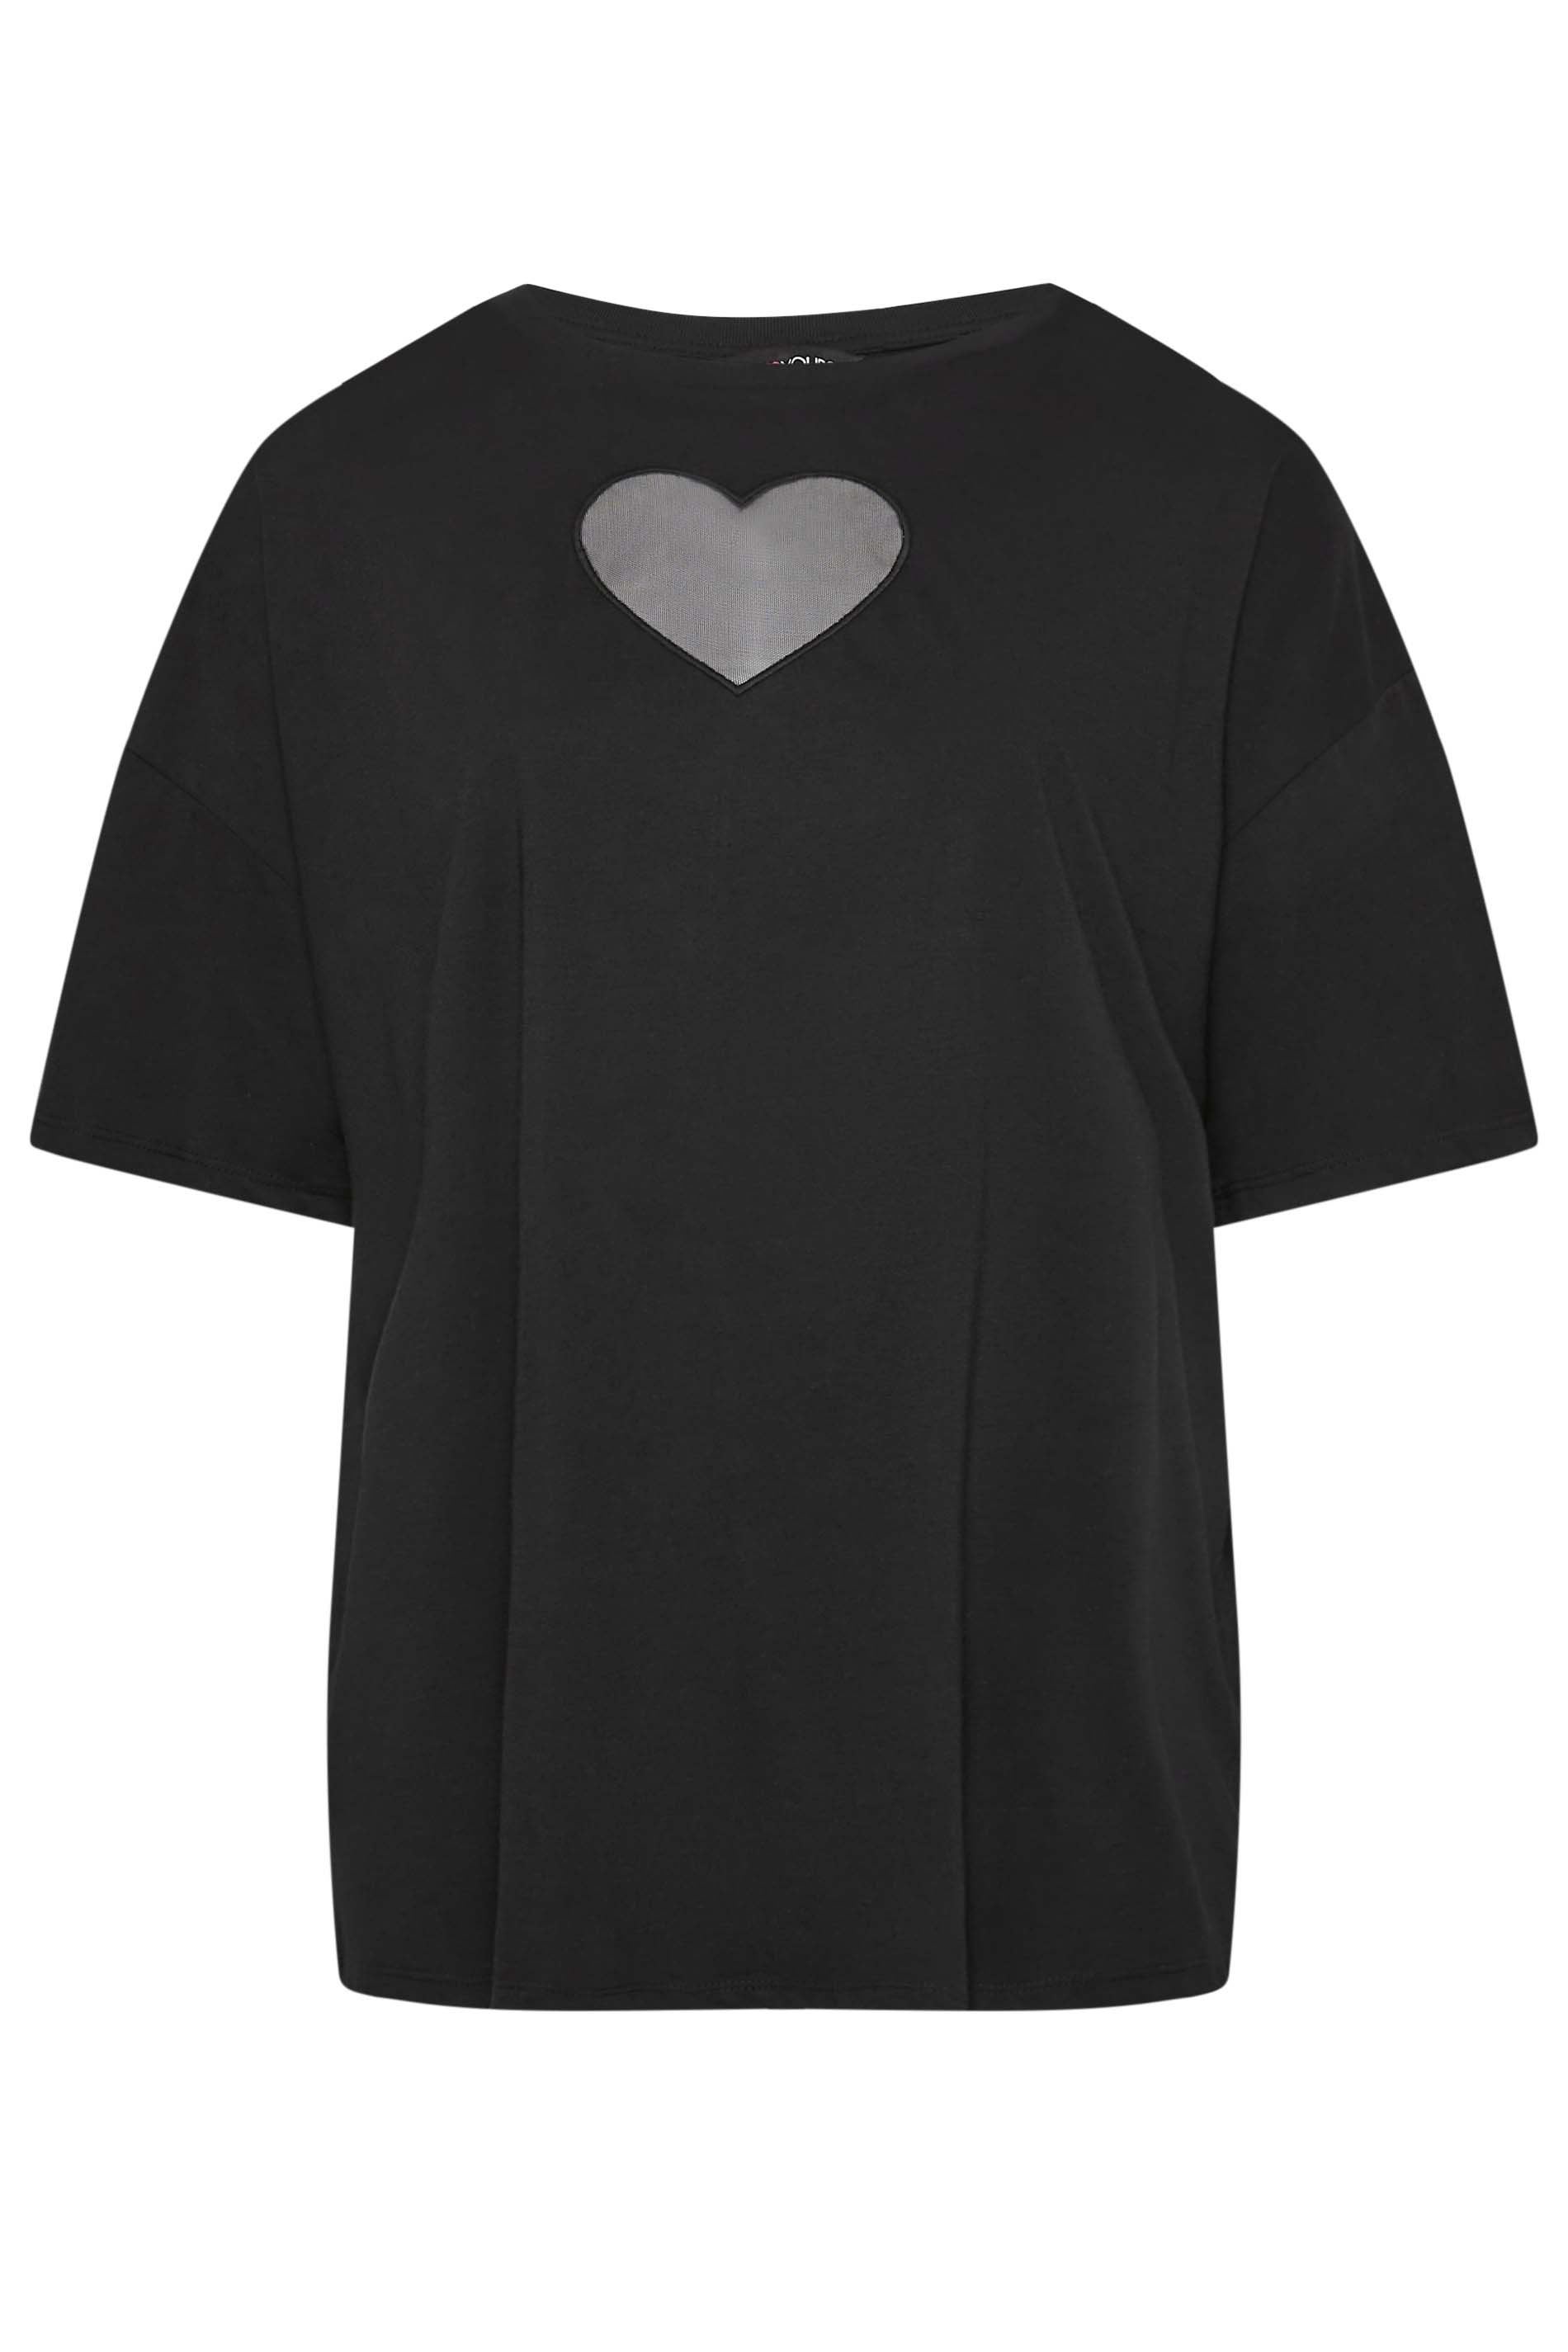 YOURS – T-Shirt in Schwarz mit Herz-Zierausschnitt | Yours Clothing